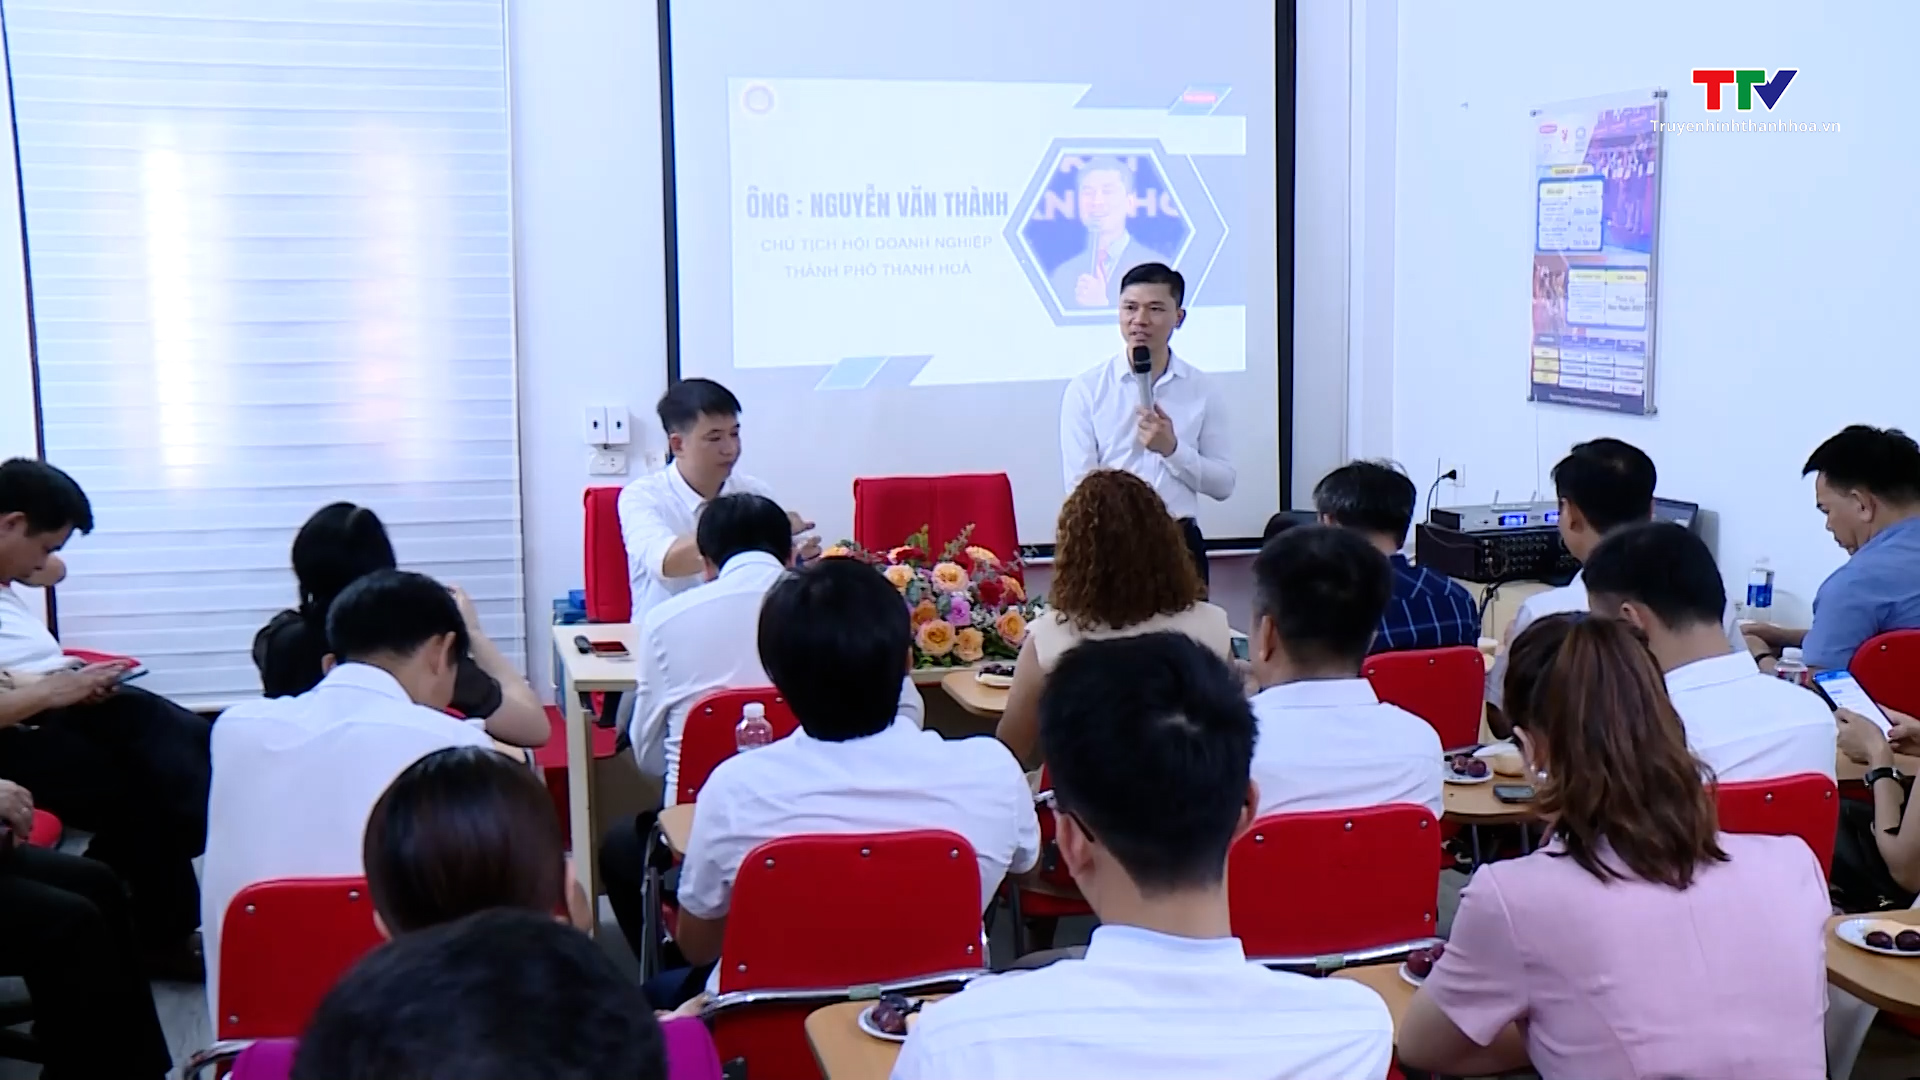 Hiệp hội doanh nghiệp thành phố Thanh Hóa thăm, kết nối hội viên - Ảnh 2.